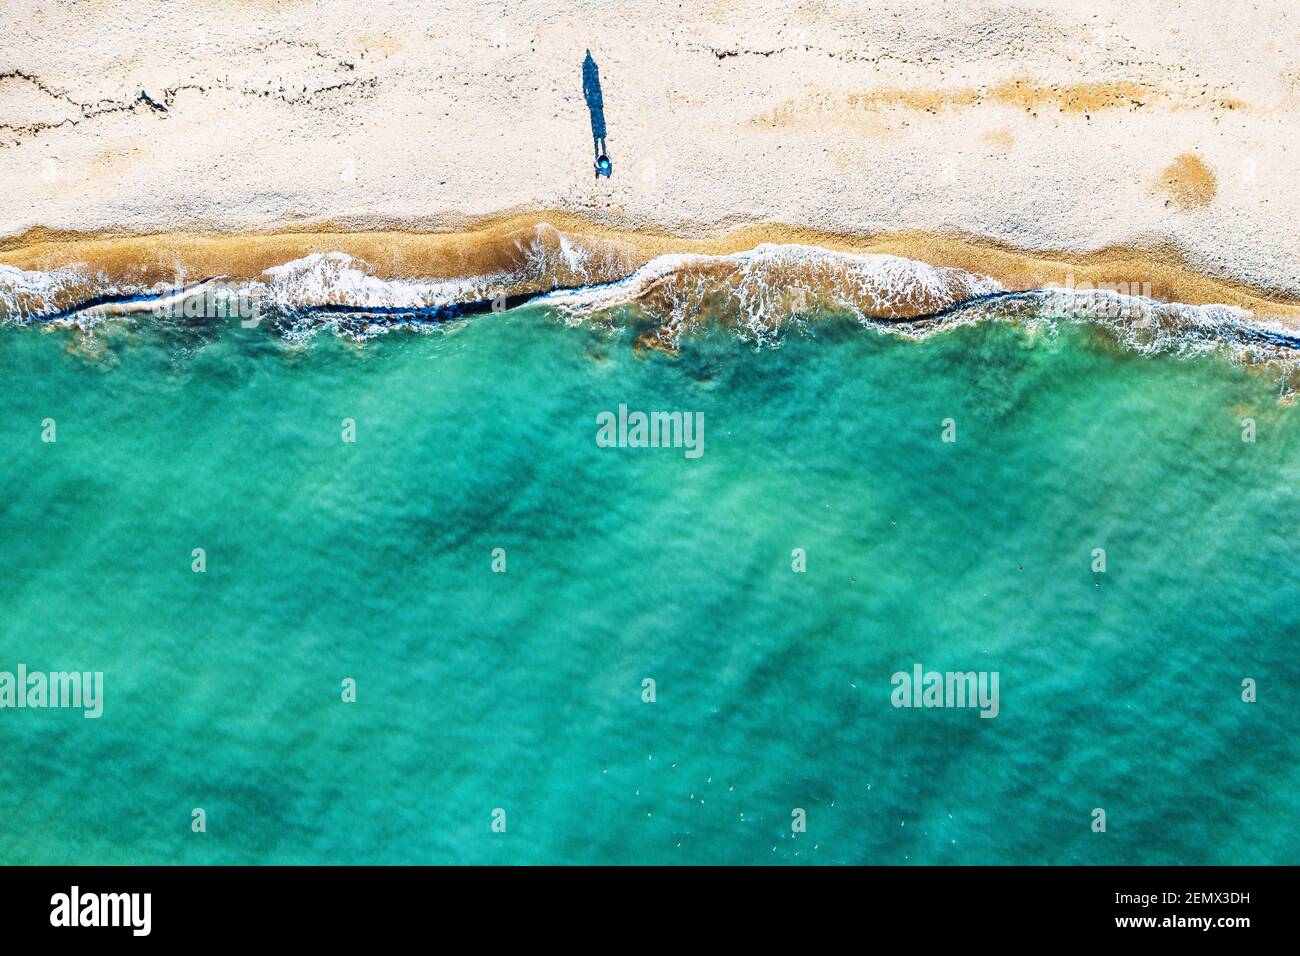 Luftaufnahme einer einzigen menschlichen Figur, die Schatten auf Sandstrand wirft, am Meer mit wunderschönem azurblauen tropischen Meerwasser und Wellen steht, kopieren Sie Platz für Ihren Text. Stockfoto